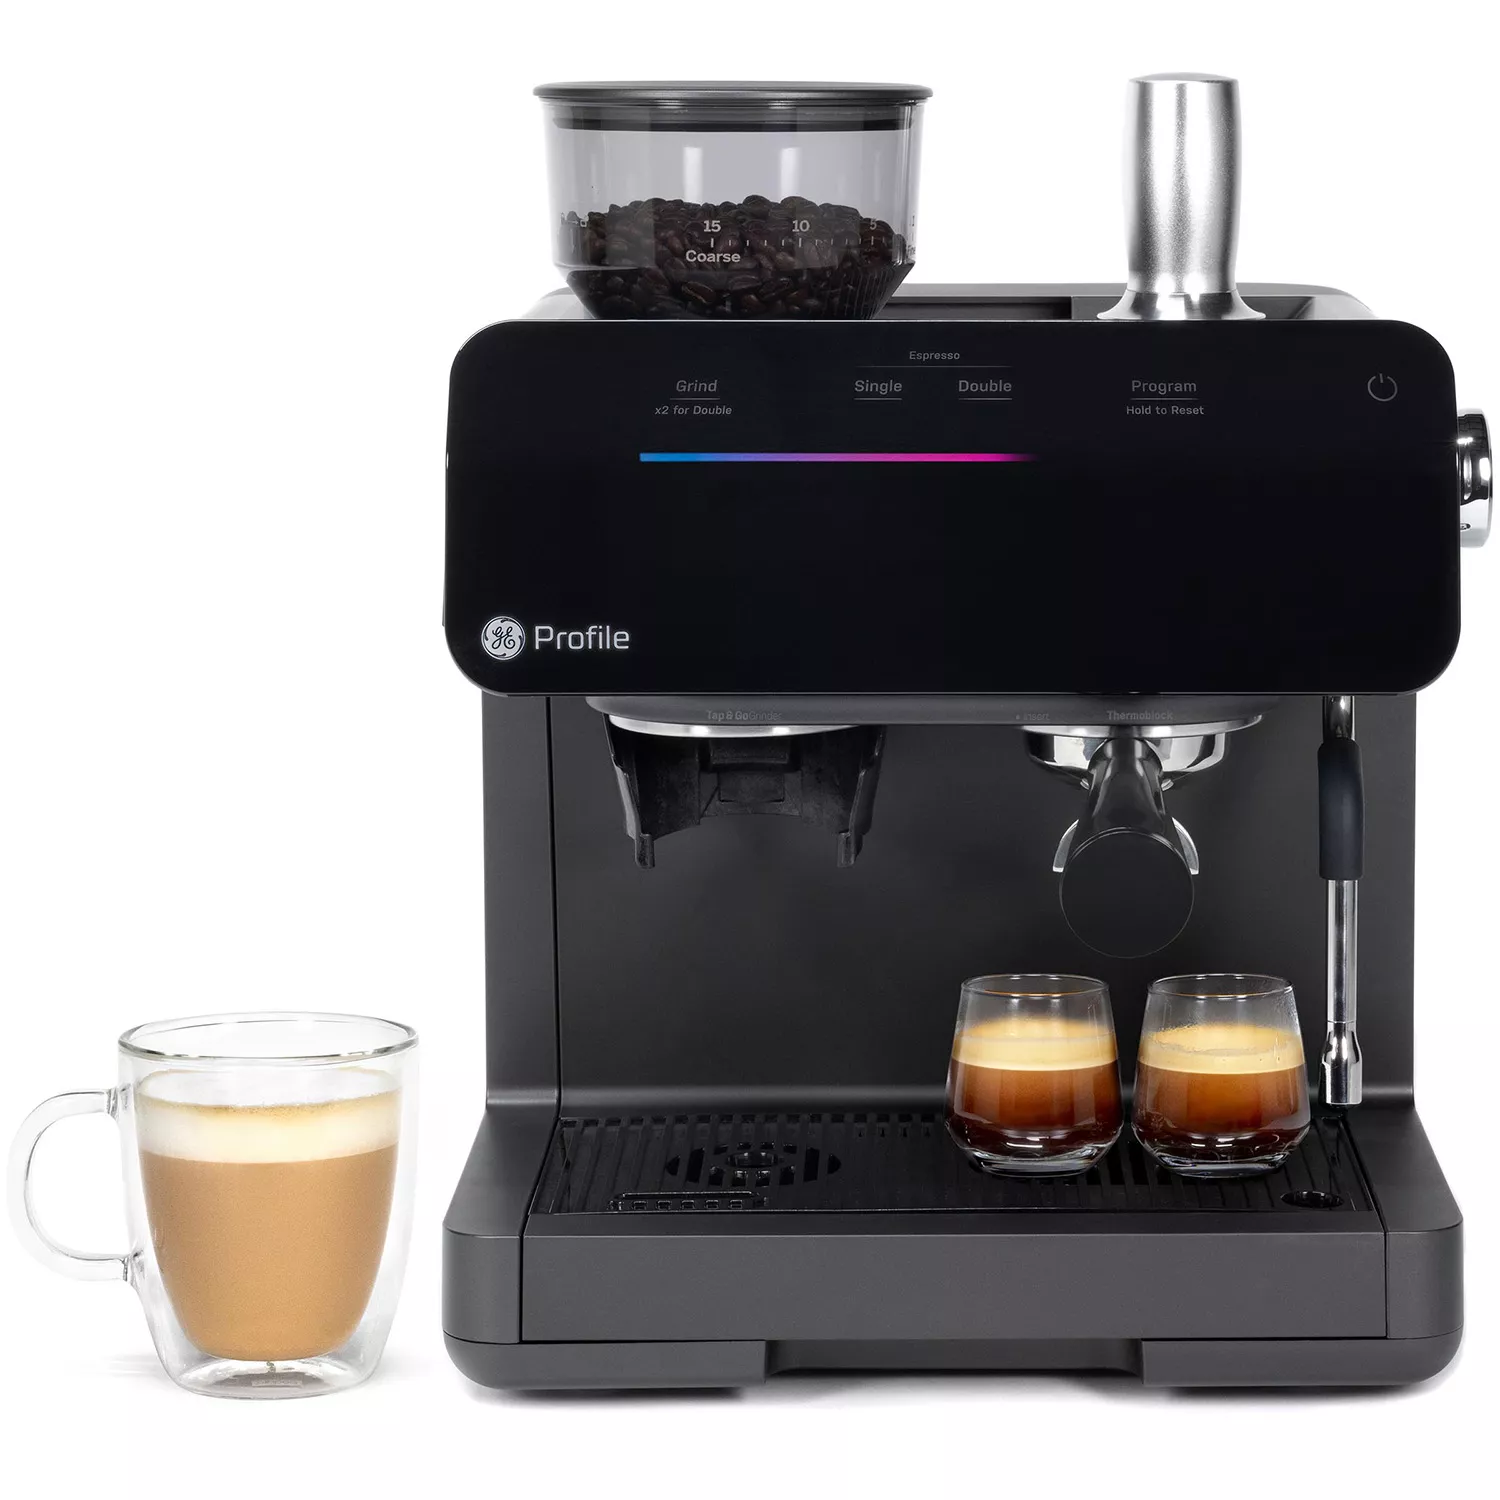 GE Profile Manual Espresso Maker, Semi-Automatic